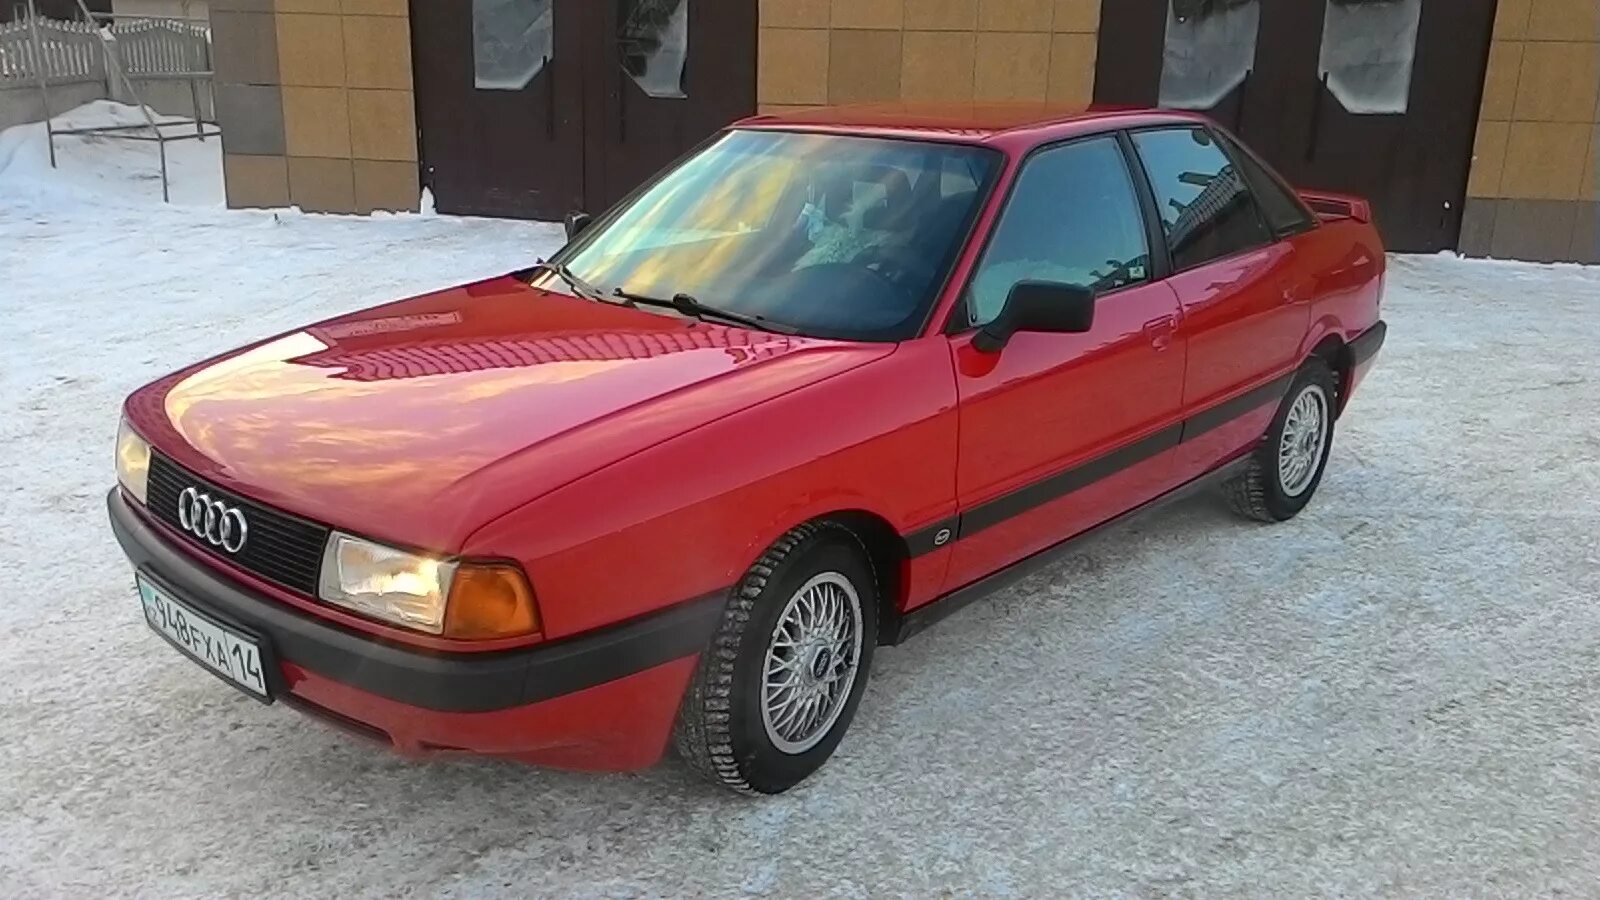 Купить ауди 80 80 года. Audi 80 b3. Audi 80 b3 Red. Audi 80 b3 1989. Ауди 80 б3 1989.